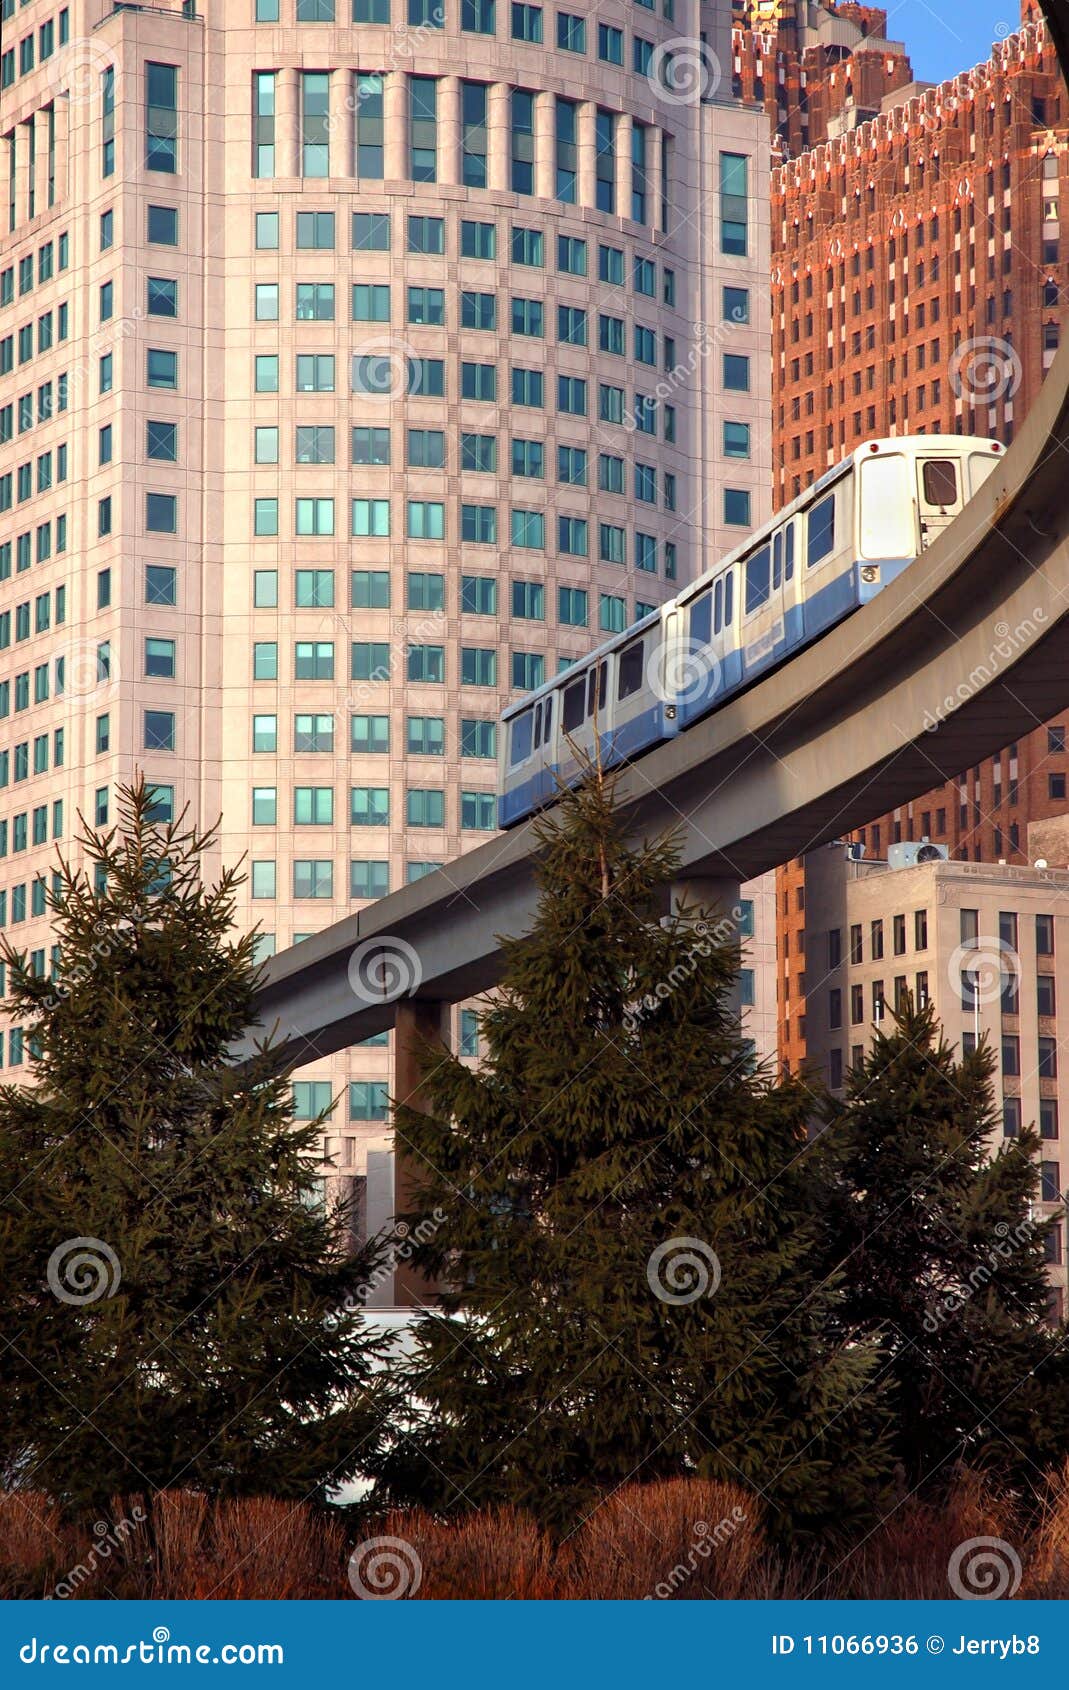 detroit commuter monorail